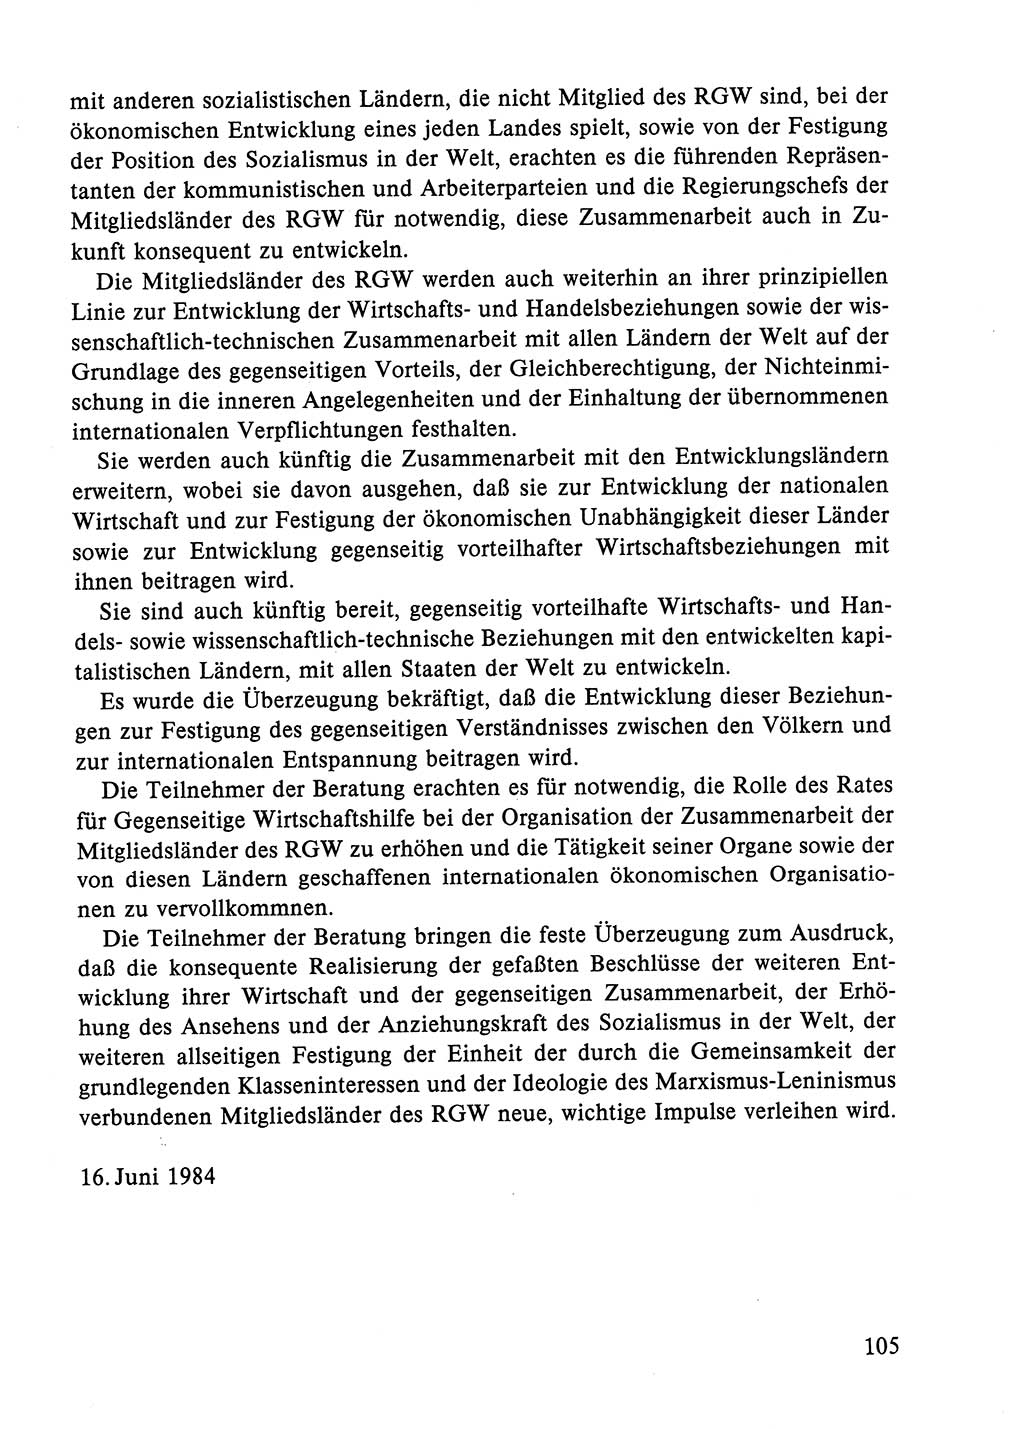 Dokumente der Sozialistischen Einheitspartei Deutschlands (SED) [Deutsche Demokratische Republik (DDR)] 1984-1985, Seite 322 (Dok. SED DDR 1984-1985, S. 322)